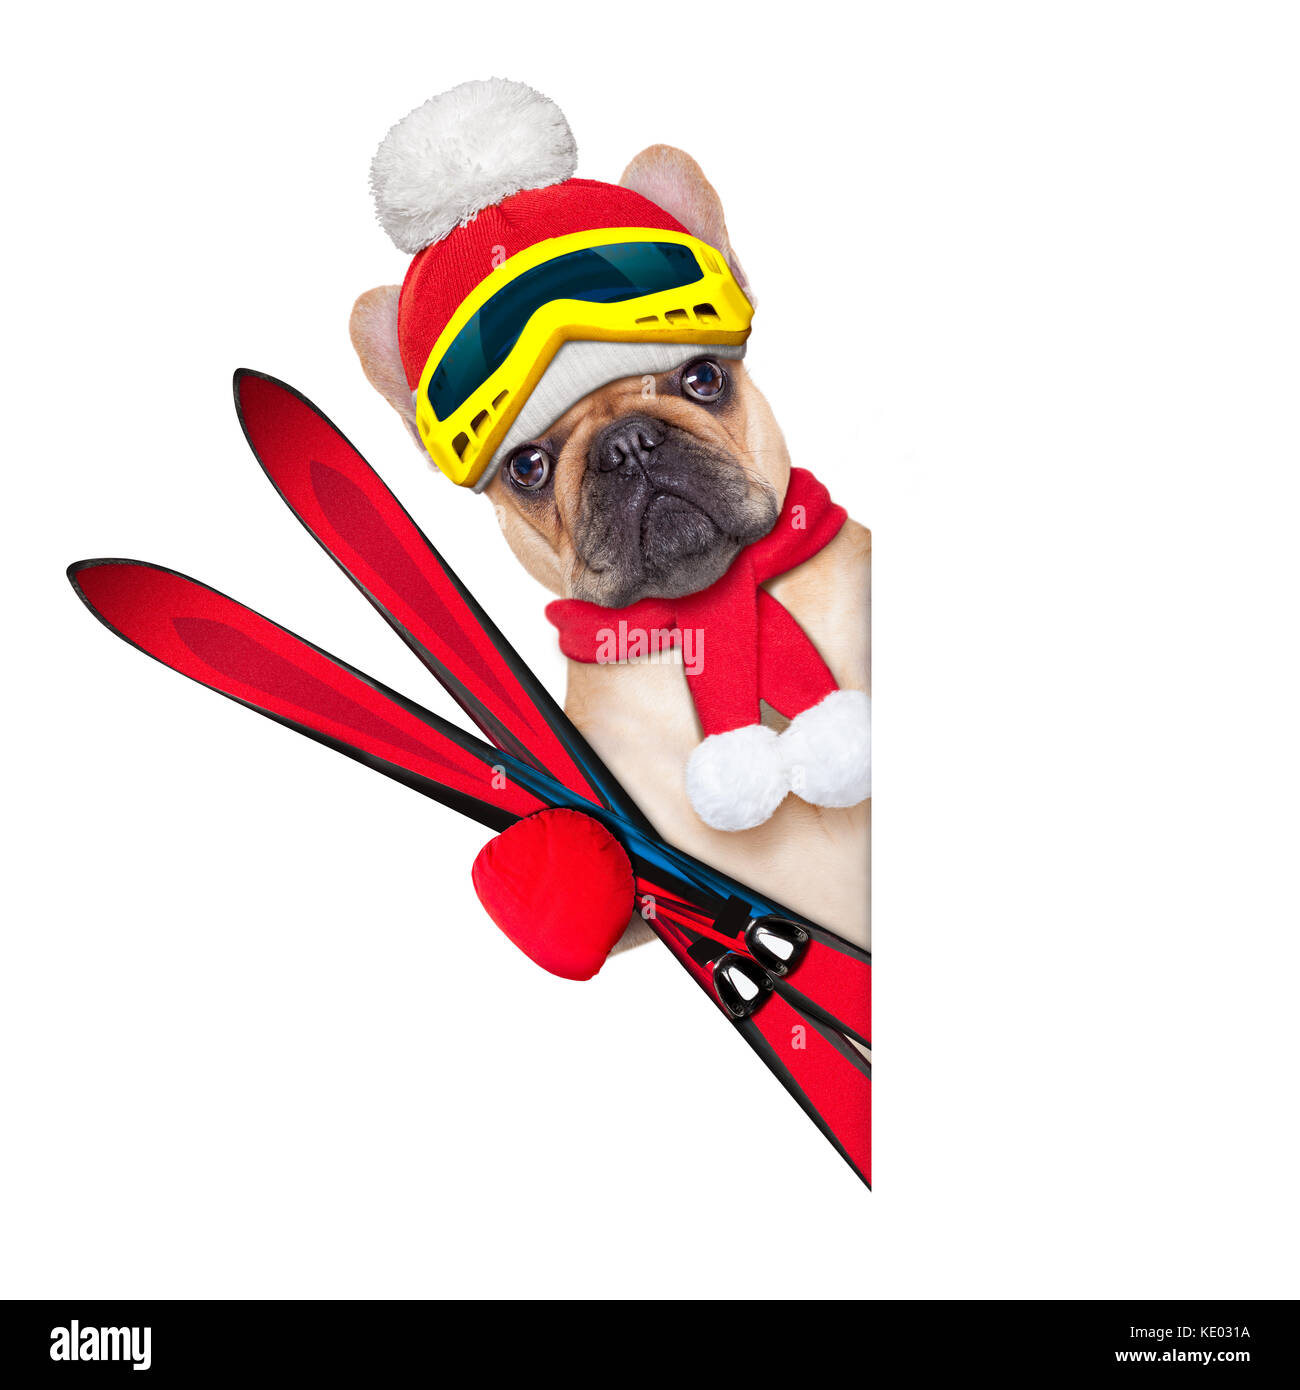 Fawn französische Bulldogge Hund mit Skiausrüstung, das Tragen von Schutzbrille, Handschuhe, einen Hut und ein roter Schal, neben einem weissen Ein leeres Banner oder Plakat, auf Wh isoliert Stockfoto